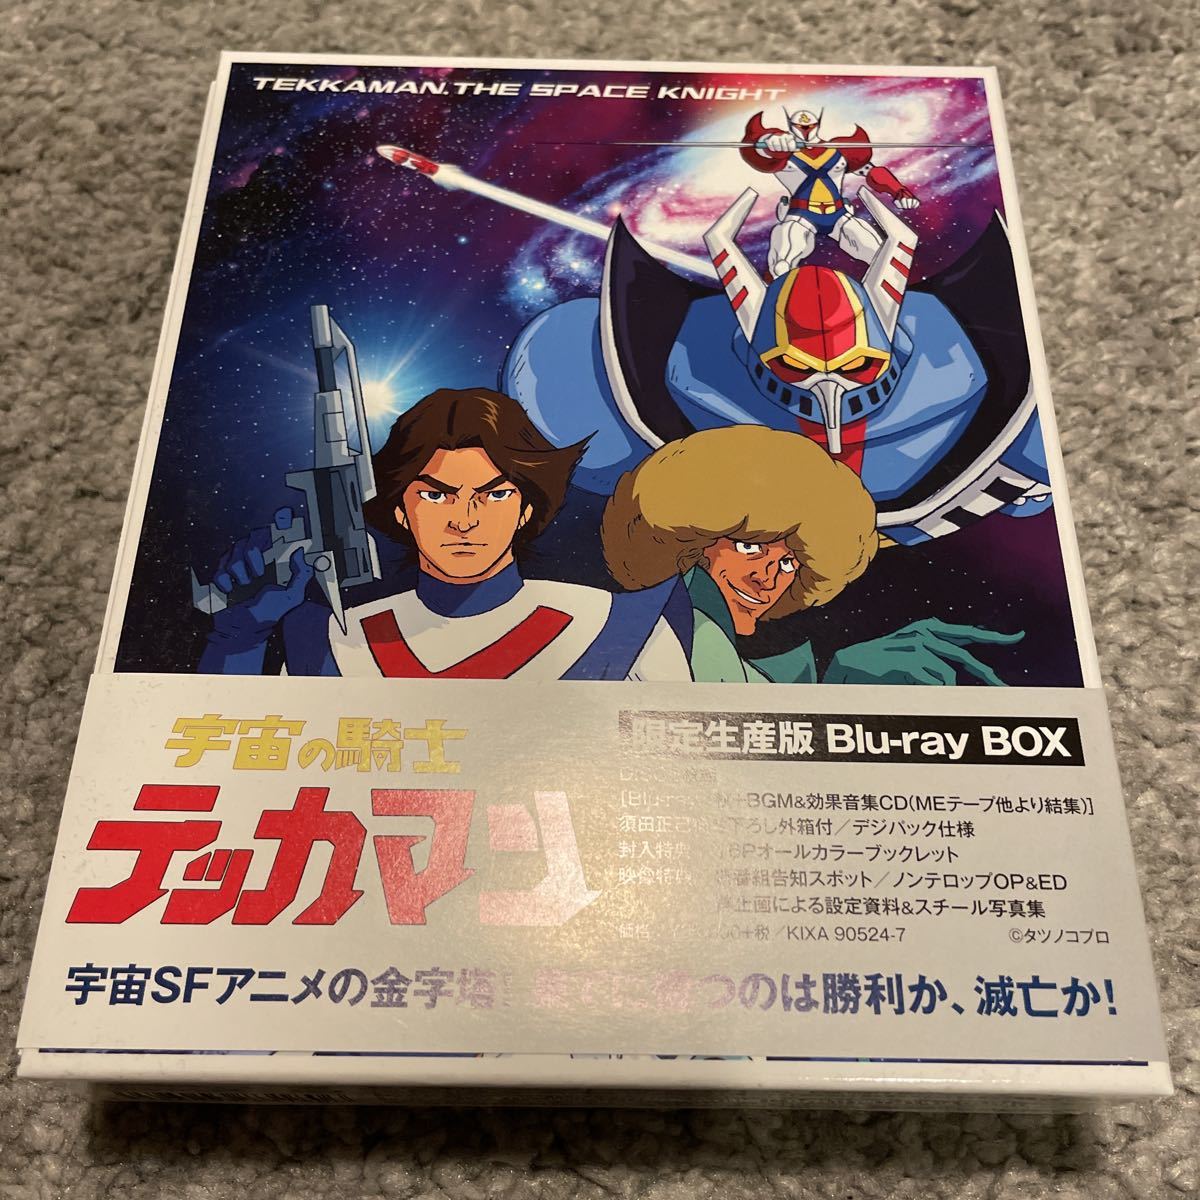 美 「宇宙の騎士テッカマン」Blu-ray BOX 限定生産版 タツノコプロ ...